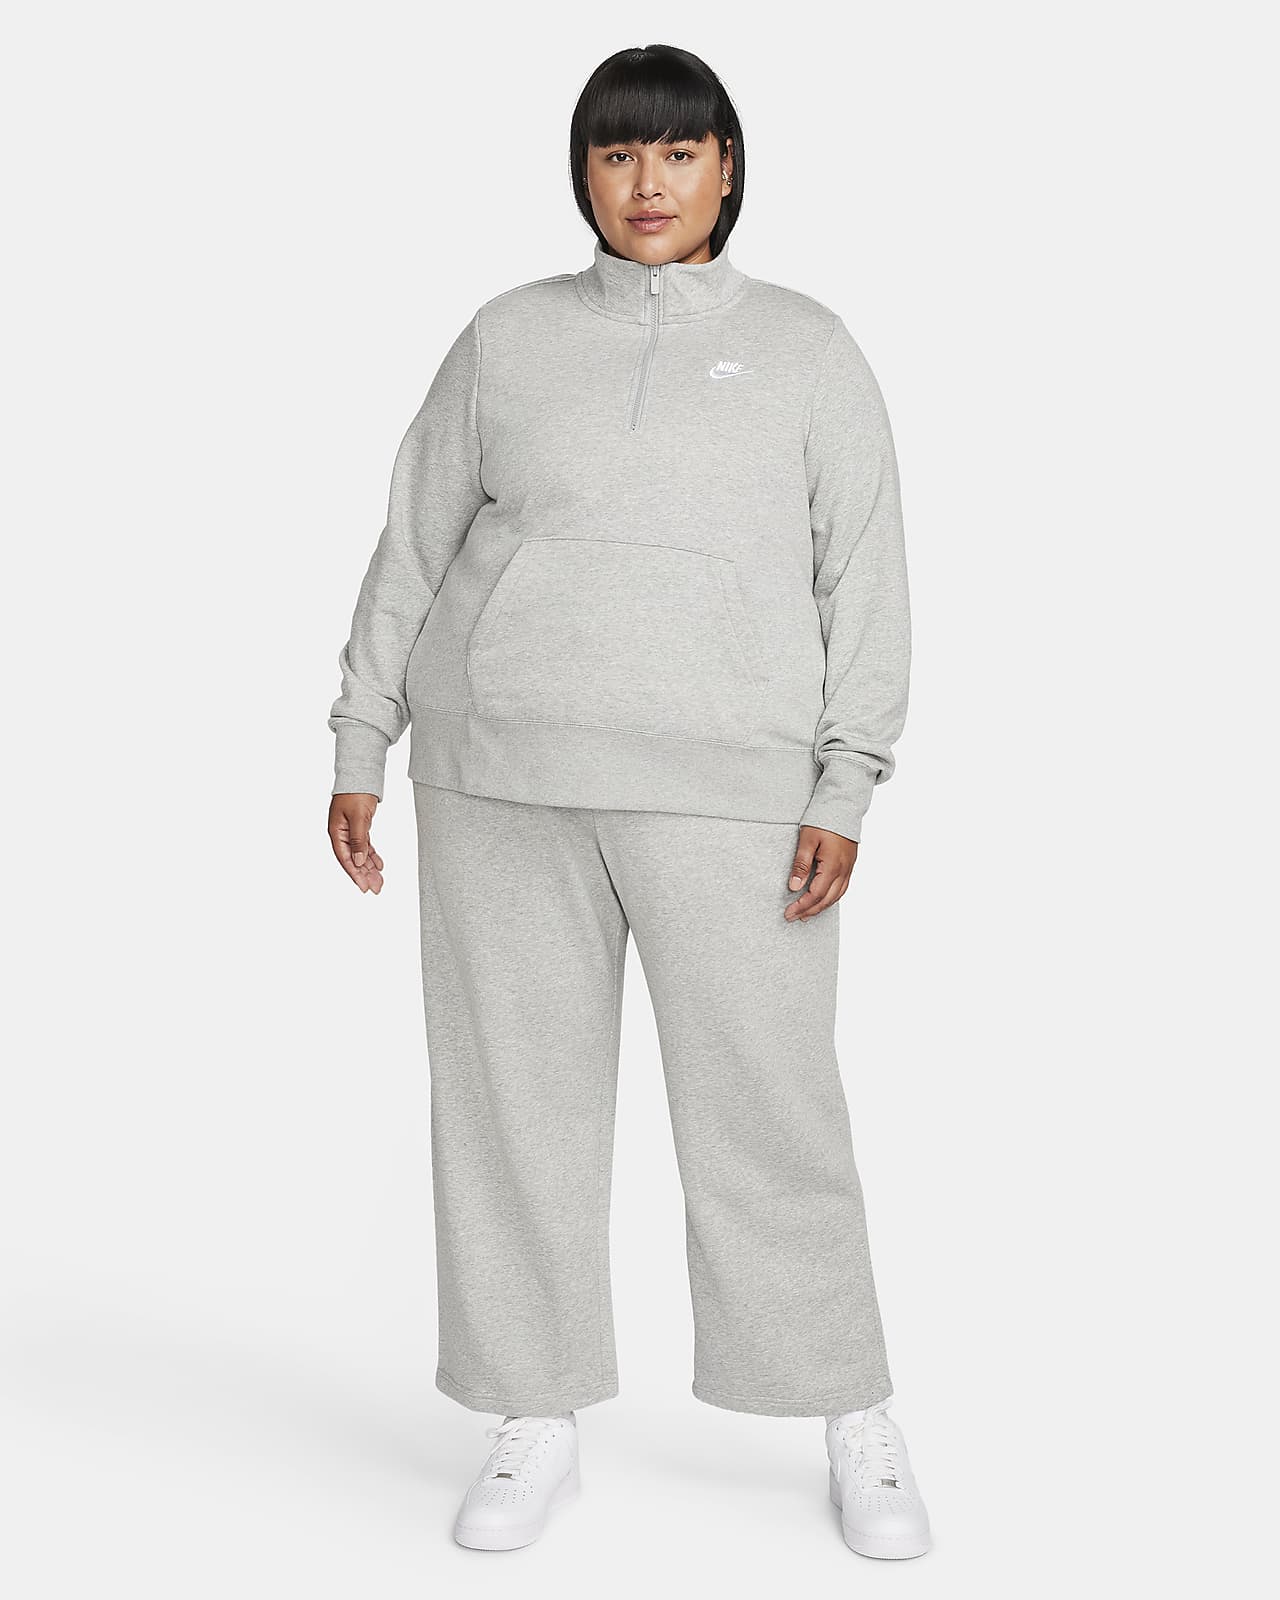 Nike Sportswear Girls' Plus Size Club Fleece Full Zip Hoodie